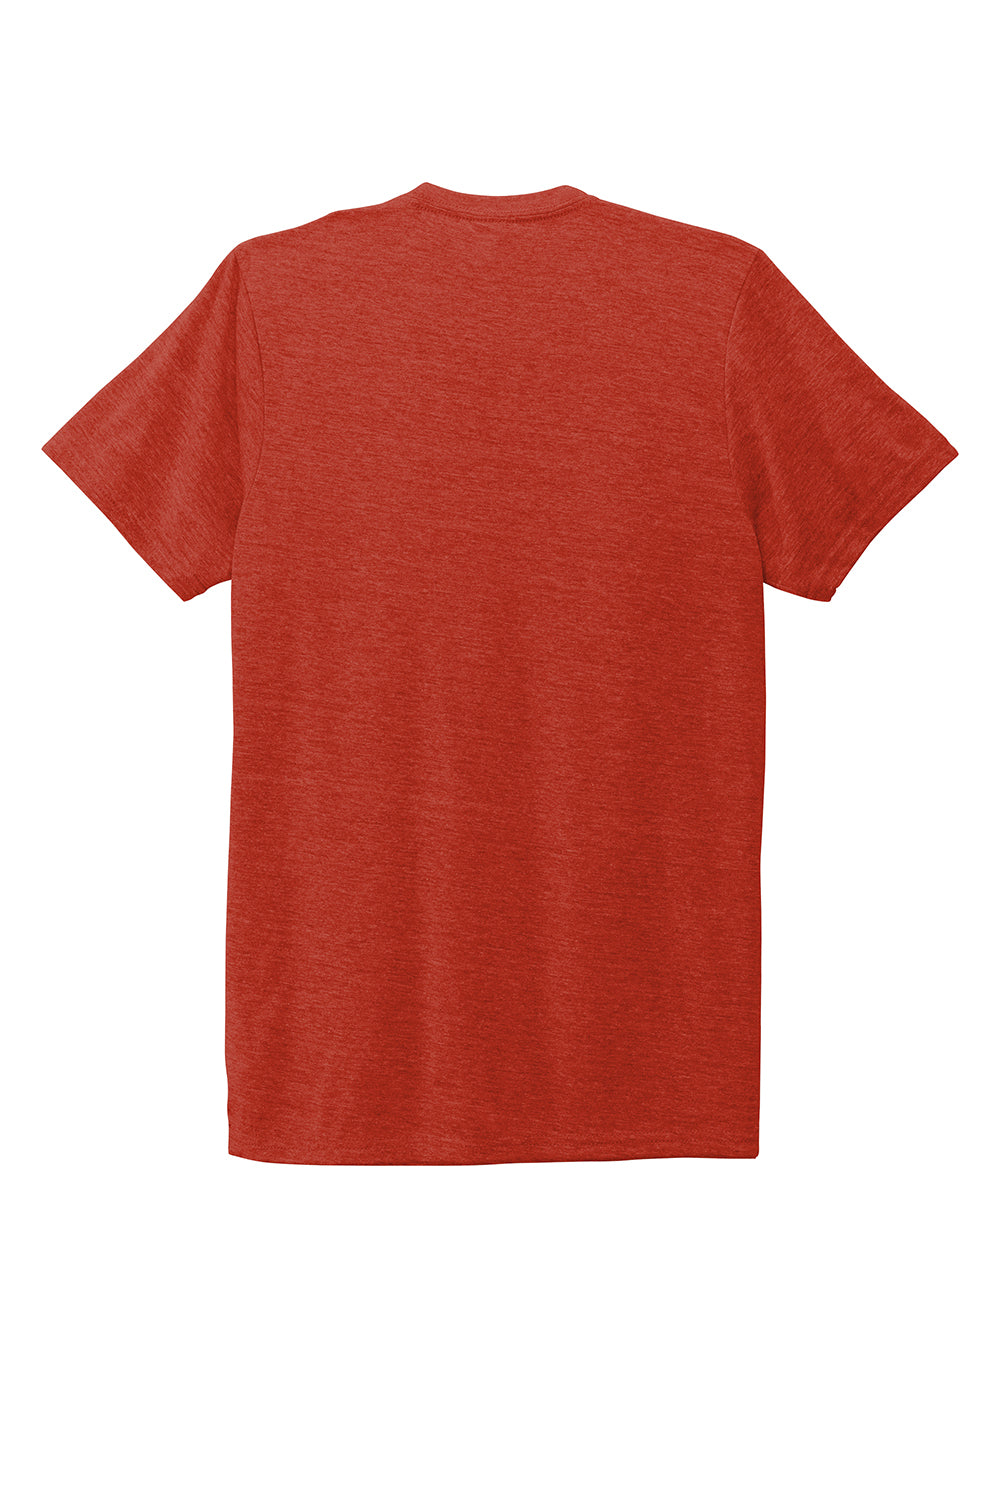 Allmade AL2004 Mens Short Sleeve Crewneck T-Shirt Desert Sun Red Flat Back